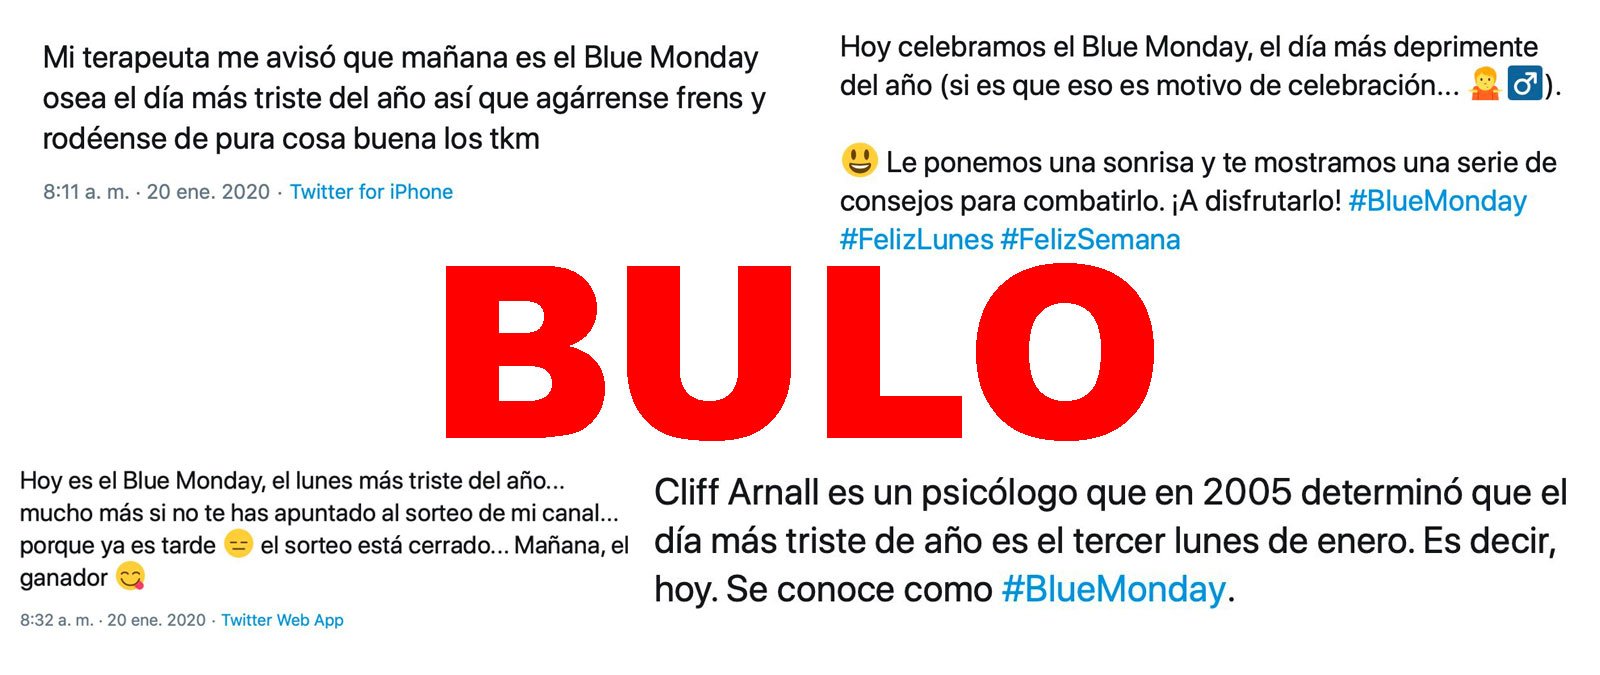 No, el Blue Monday no es el día más triste del año · Maldita.es - Periodismo para que no te la cuelen